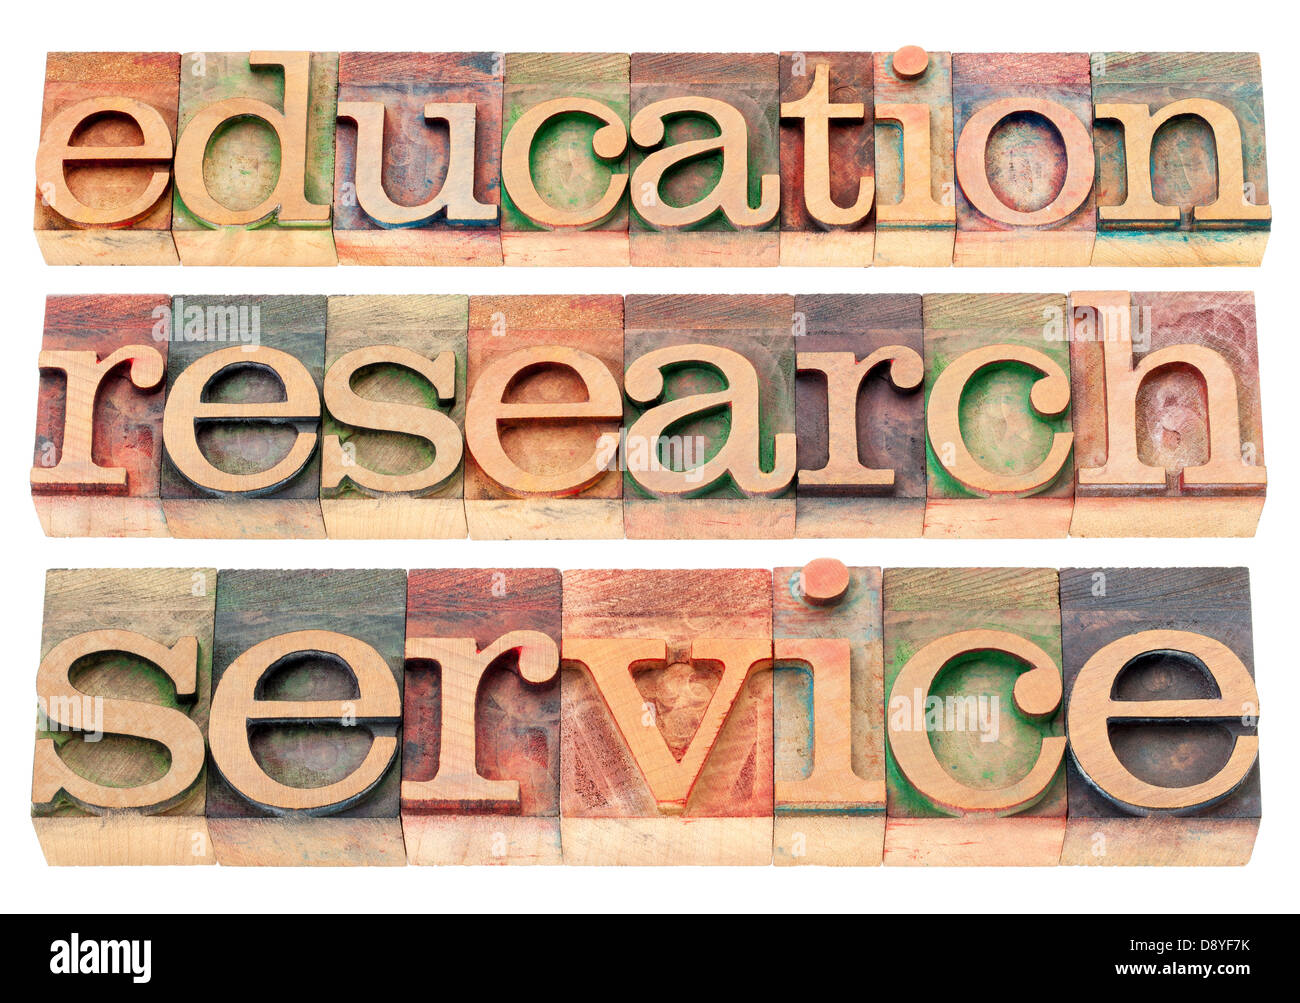 Educazione, ricerca e servizio parole - possibile università o college slogan o dichiarazione Foto Stock